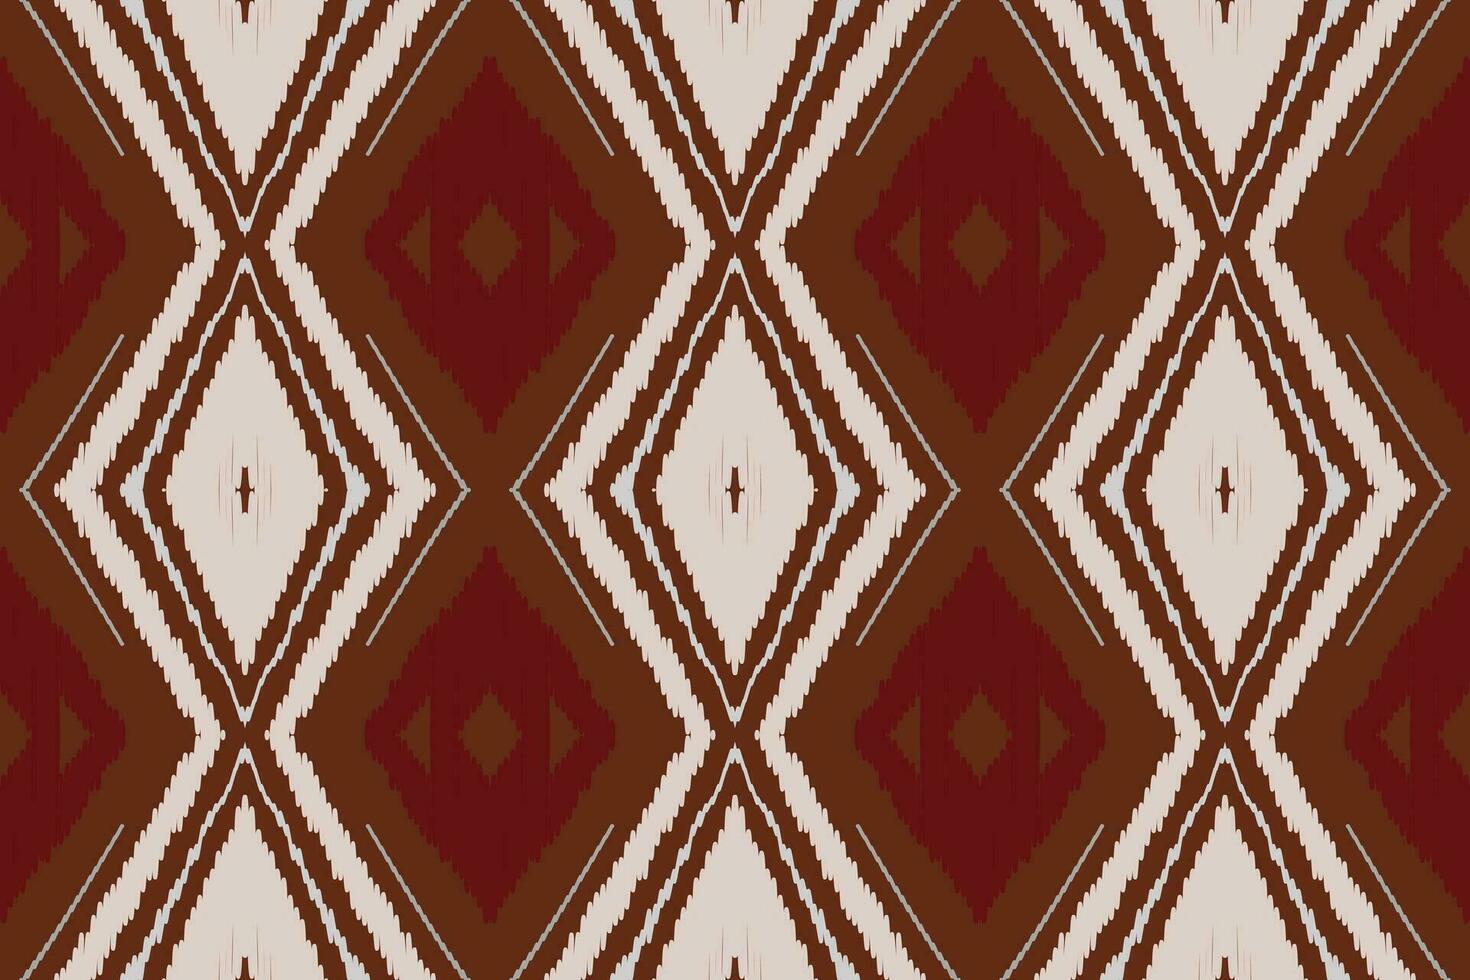 ikat-blumenpaisley-stickerei auf weißem hintergrund.geometrisches ethnisches orientalisches muster traditionell.aztekische stilabstrakte vektorillustration.design für textur,stoff,kleidung,verpackung,dekoration,sarong. vektor